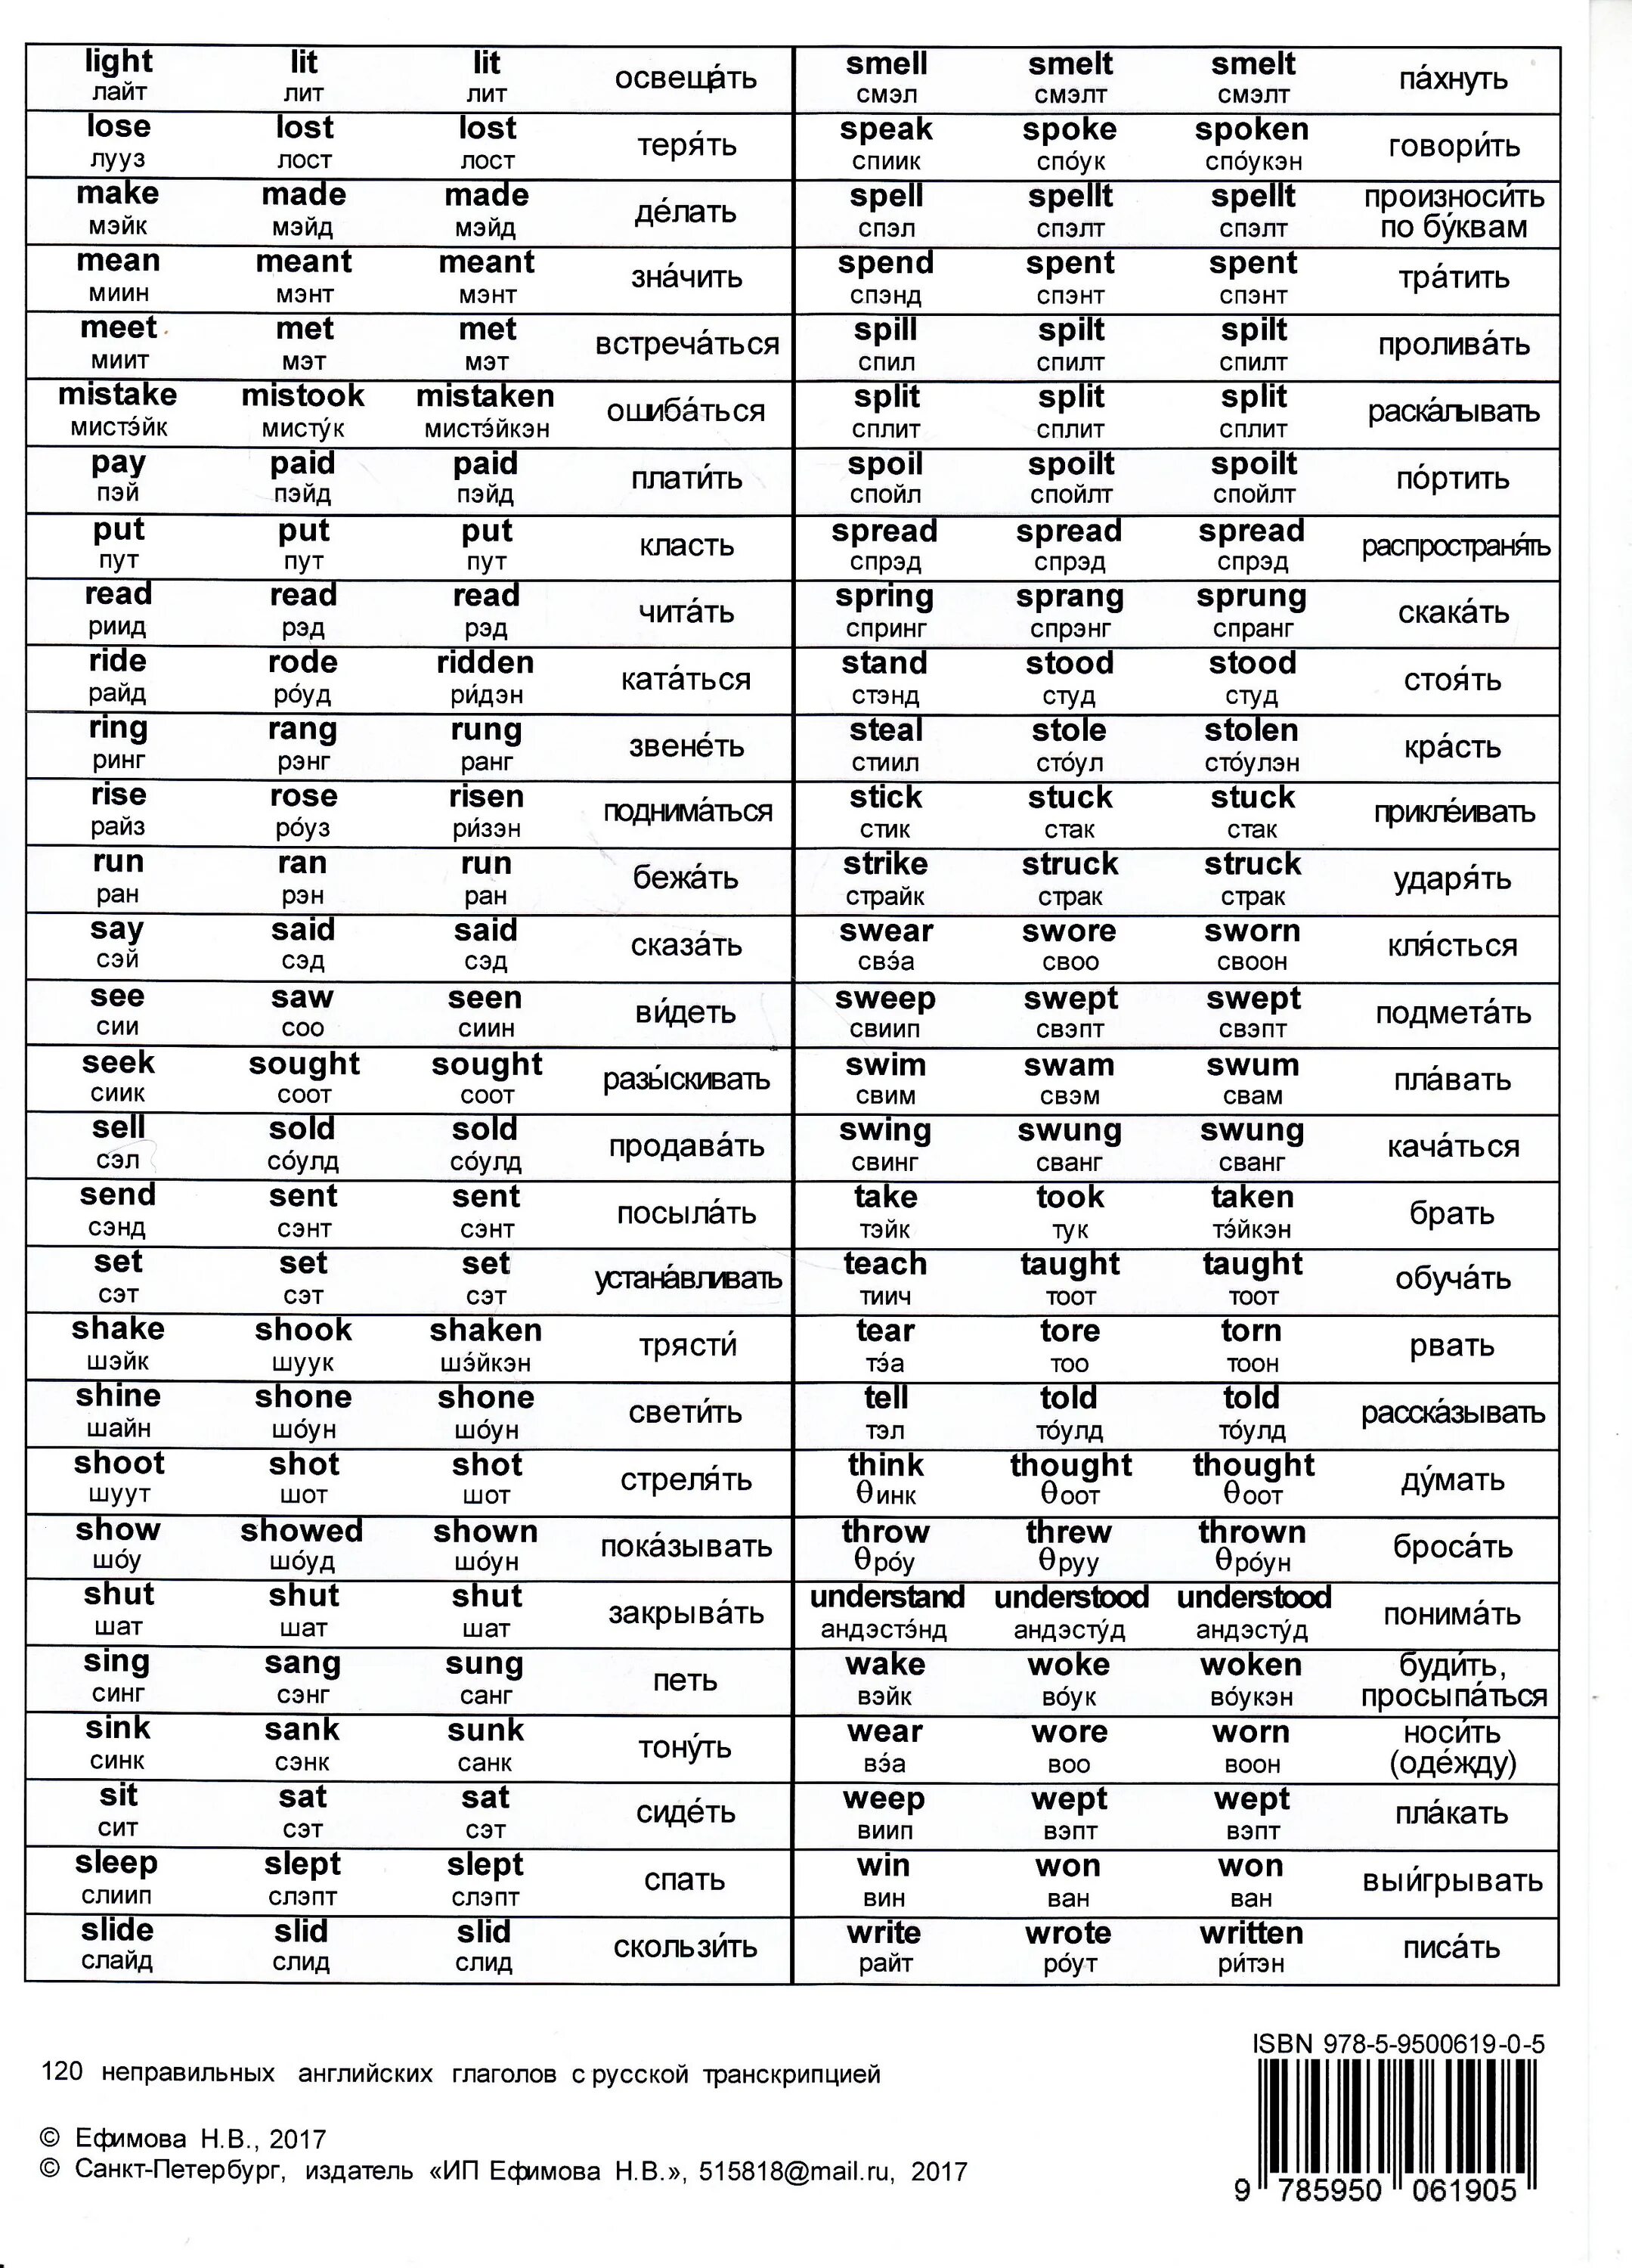 Английские глаголы на b. Таблица неправильных глаголов англ. Таблица неправильных глаголов в англ языке. Таблица неправильных глаголов англ с переводом. Таблица неправильных глаголов с транскрипцией и переводом.